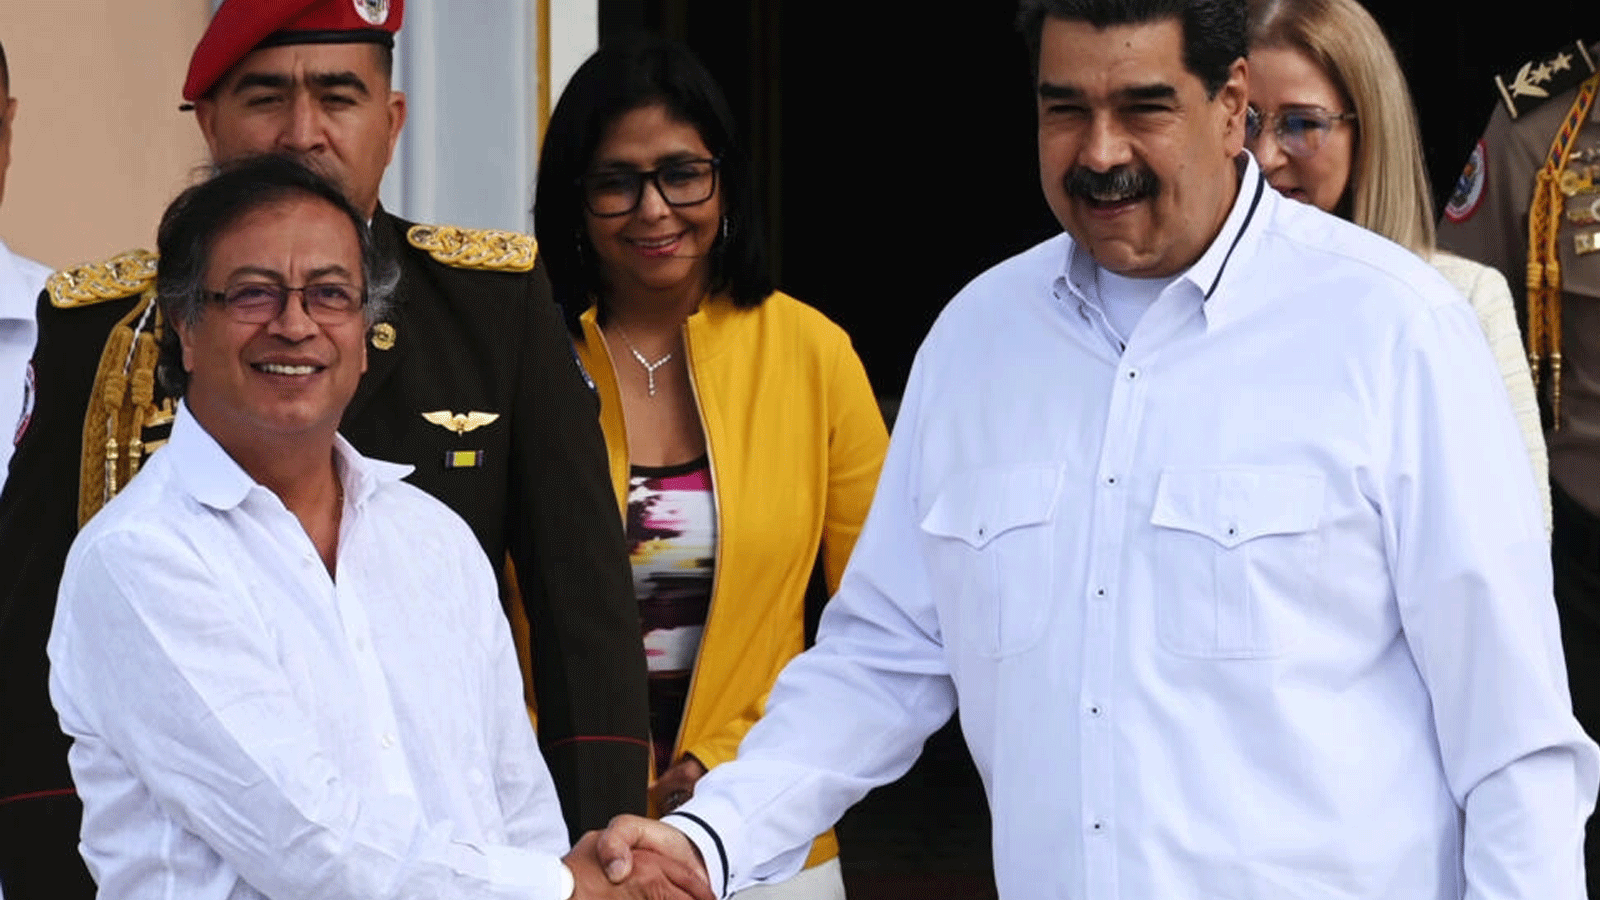 الرئيس الفنزويلي نيكولاس مادورو (إلى اليمين) ونظيره الكولومبي غوستافو بيترو (يسار) يتصافحان قبل اجتماع خاص في قصر ميرافلوريس الرئاسي في كاراكاس. 7كانون الثاني\ يناير 2023